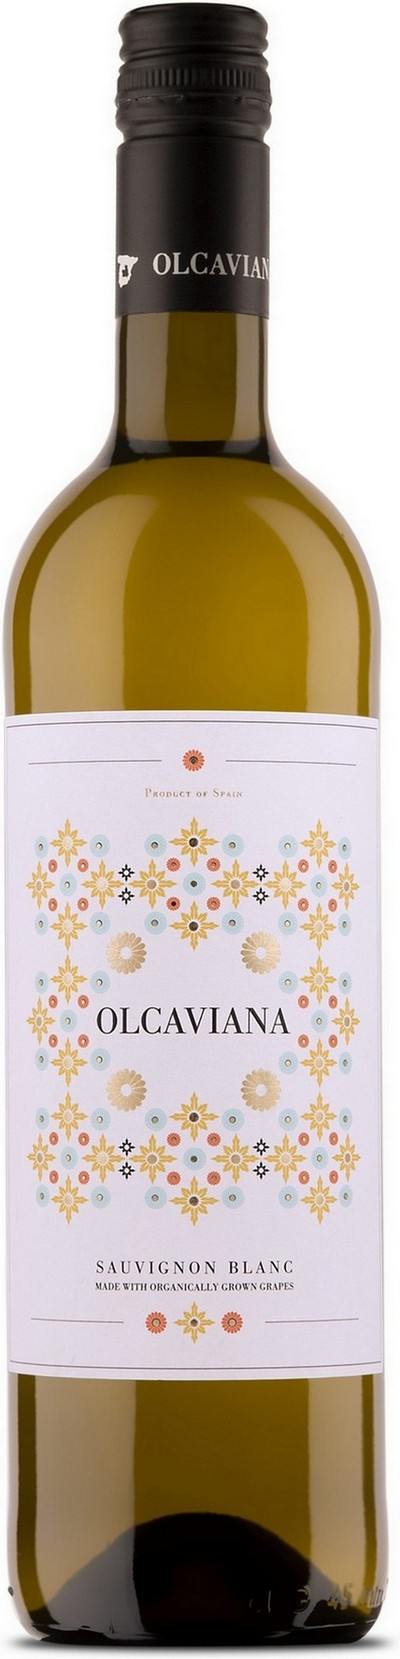 olcaviana-sauvignon-blanc-organic-wine-2020